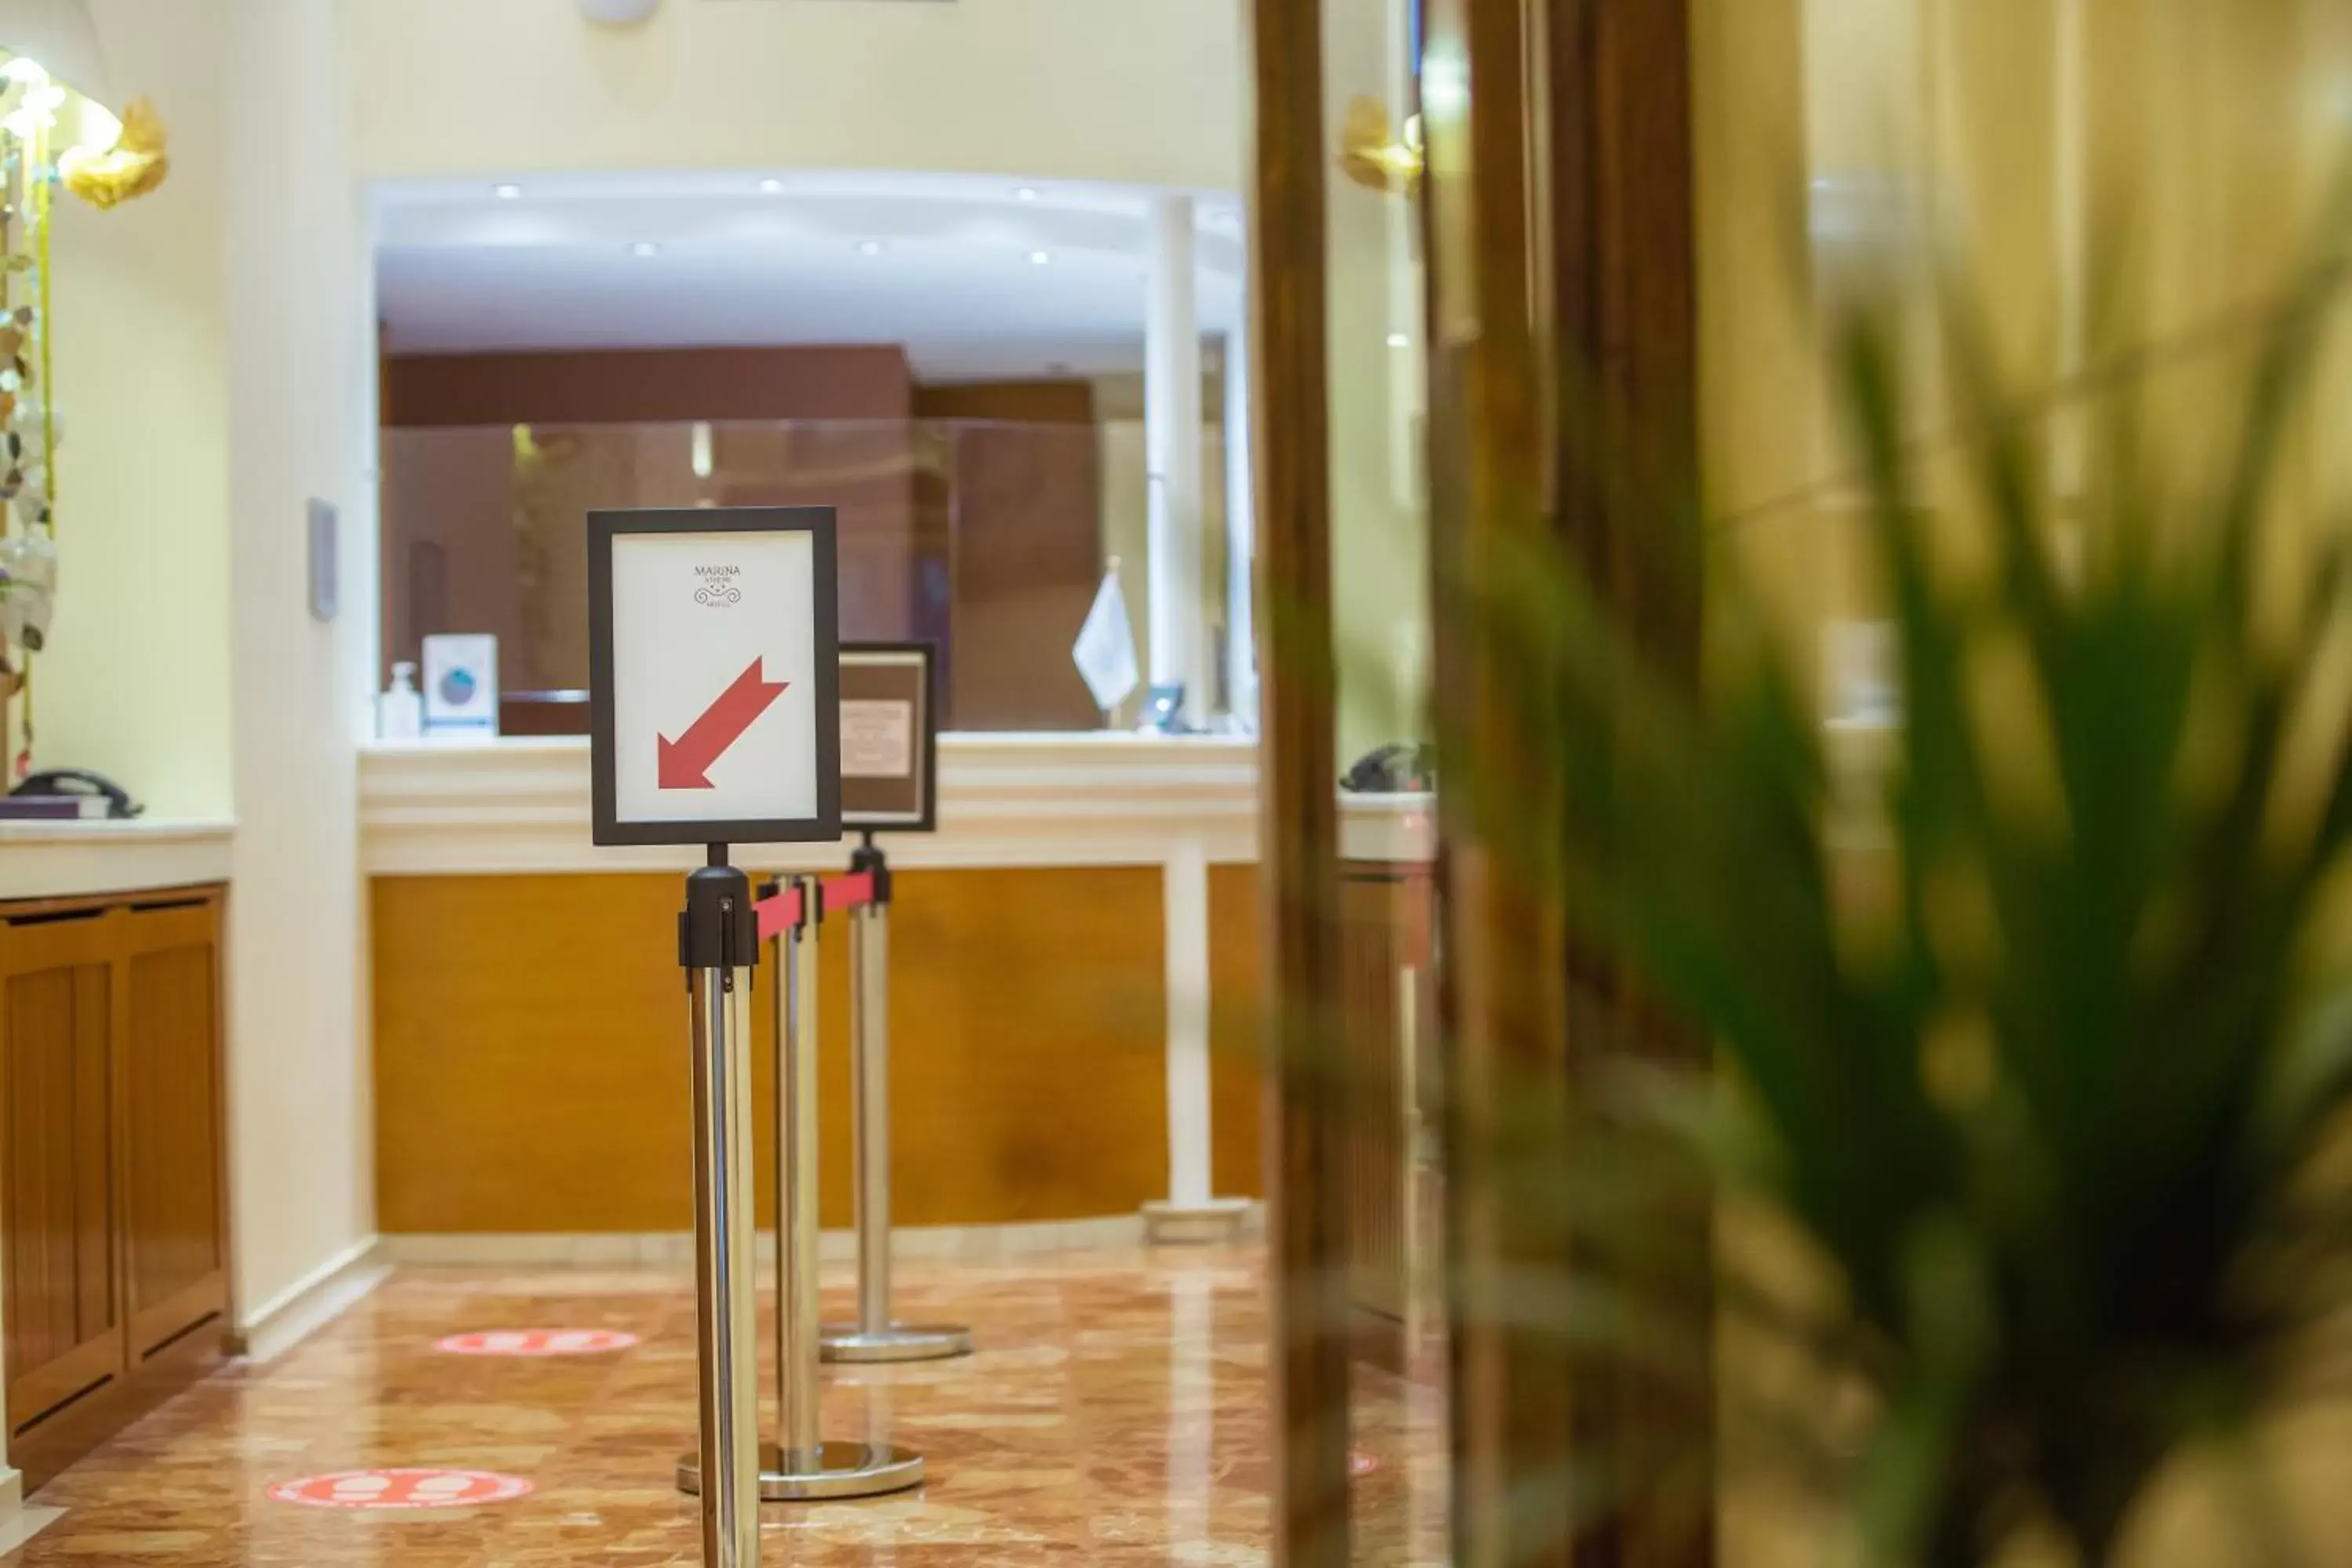 Lobby or reception, Lobby/Reception in Hotel Marina